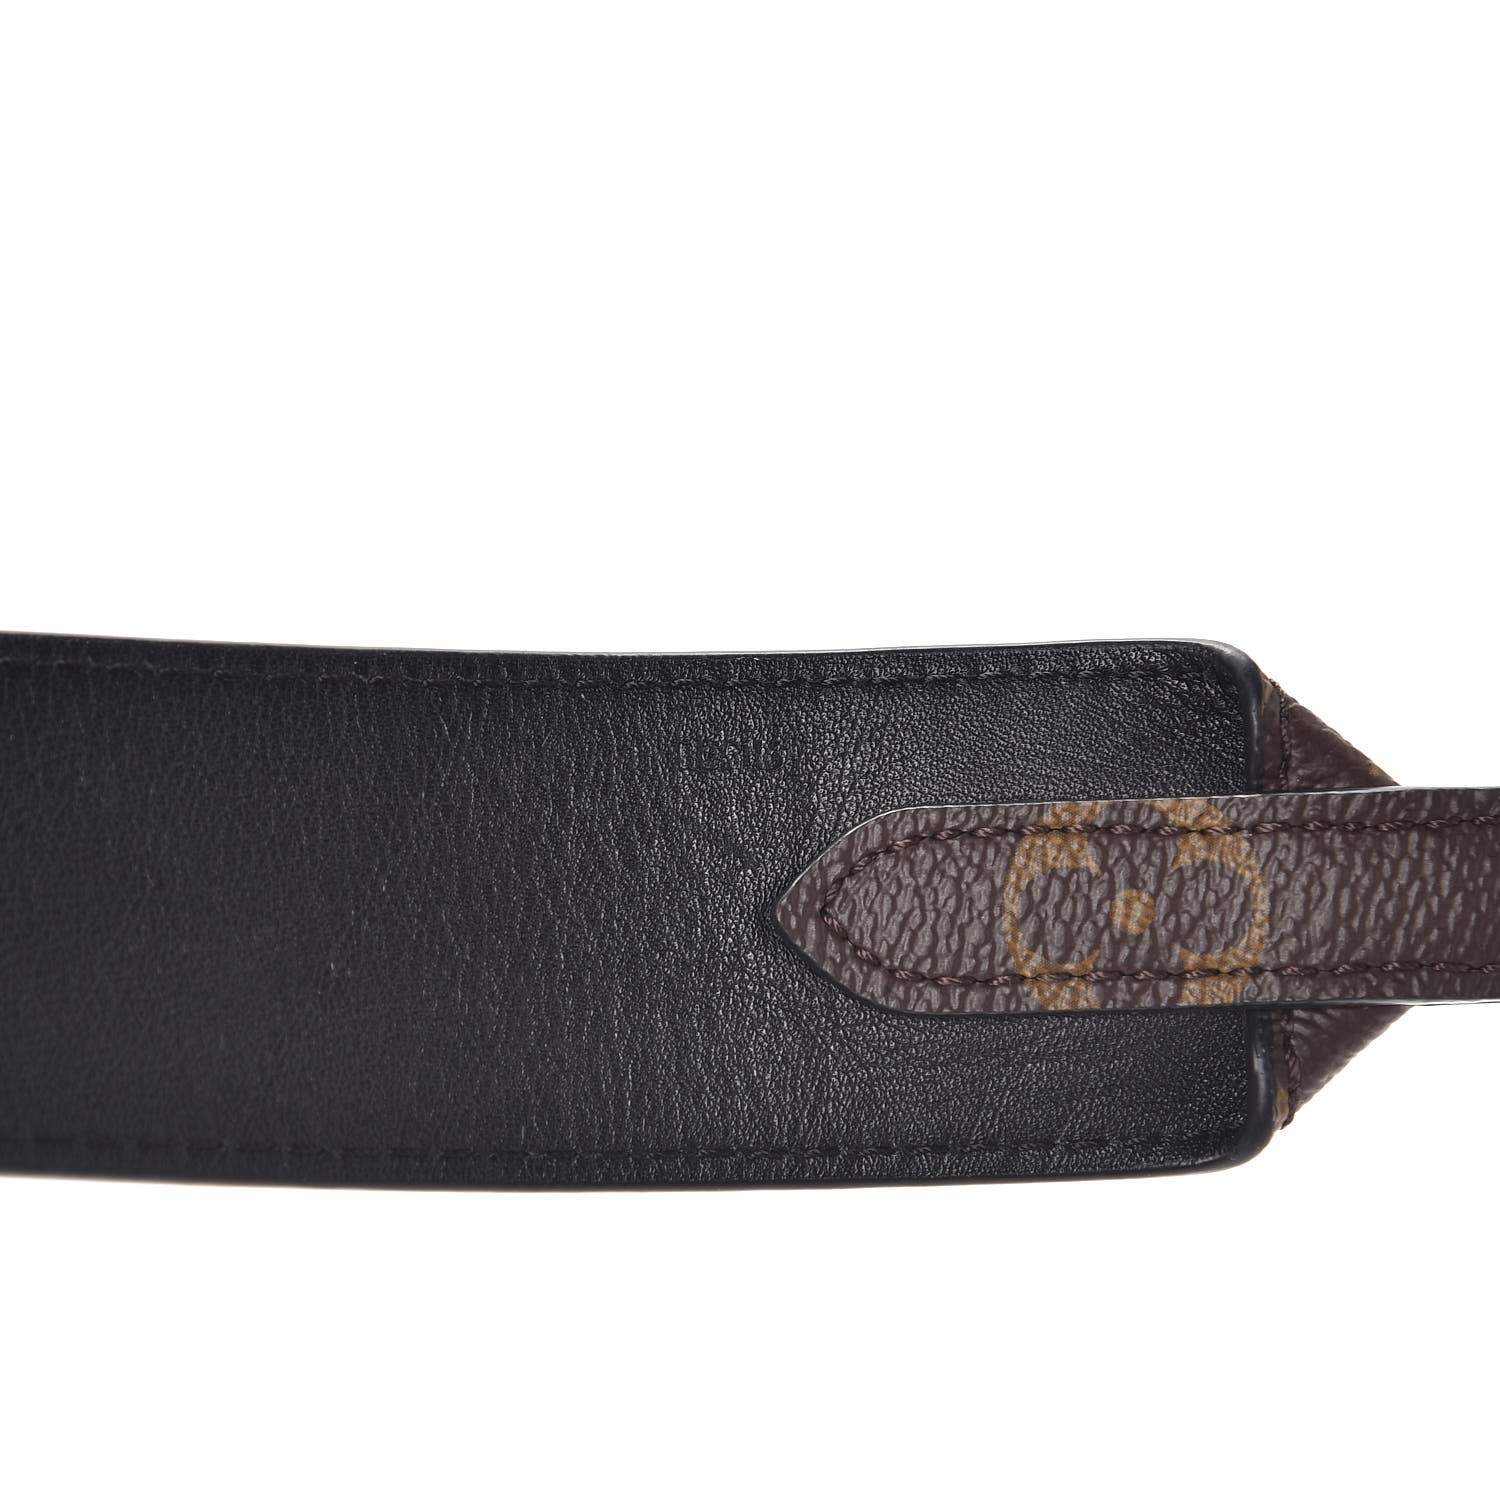 LOUIS VUITTON Monogram Bandouliere Shoulder Strap Noir Black 271889